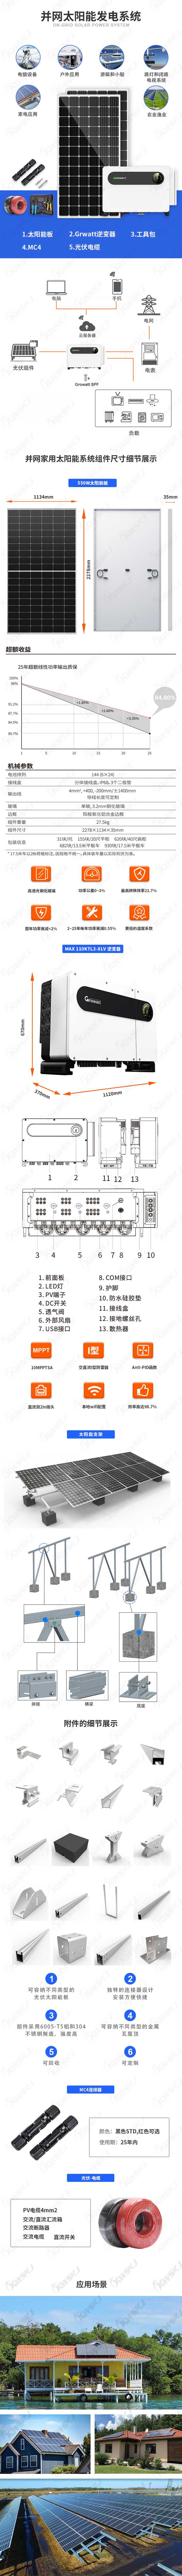 MAX-110KTL3-XLV并网系统详情（康威斯-中文）.jpg